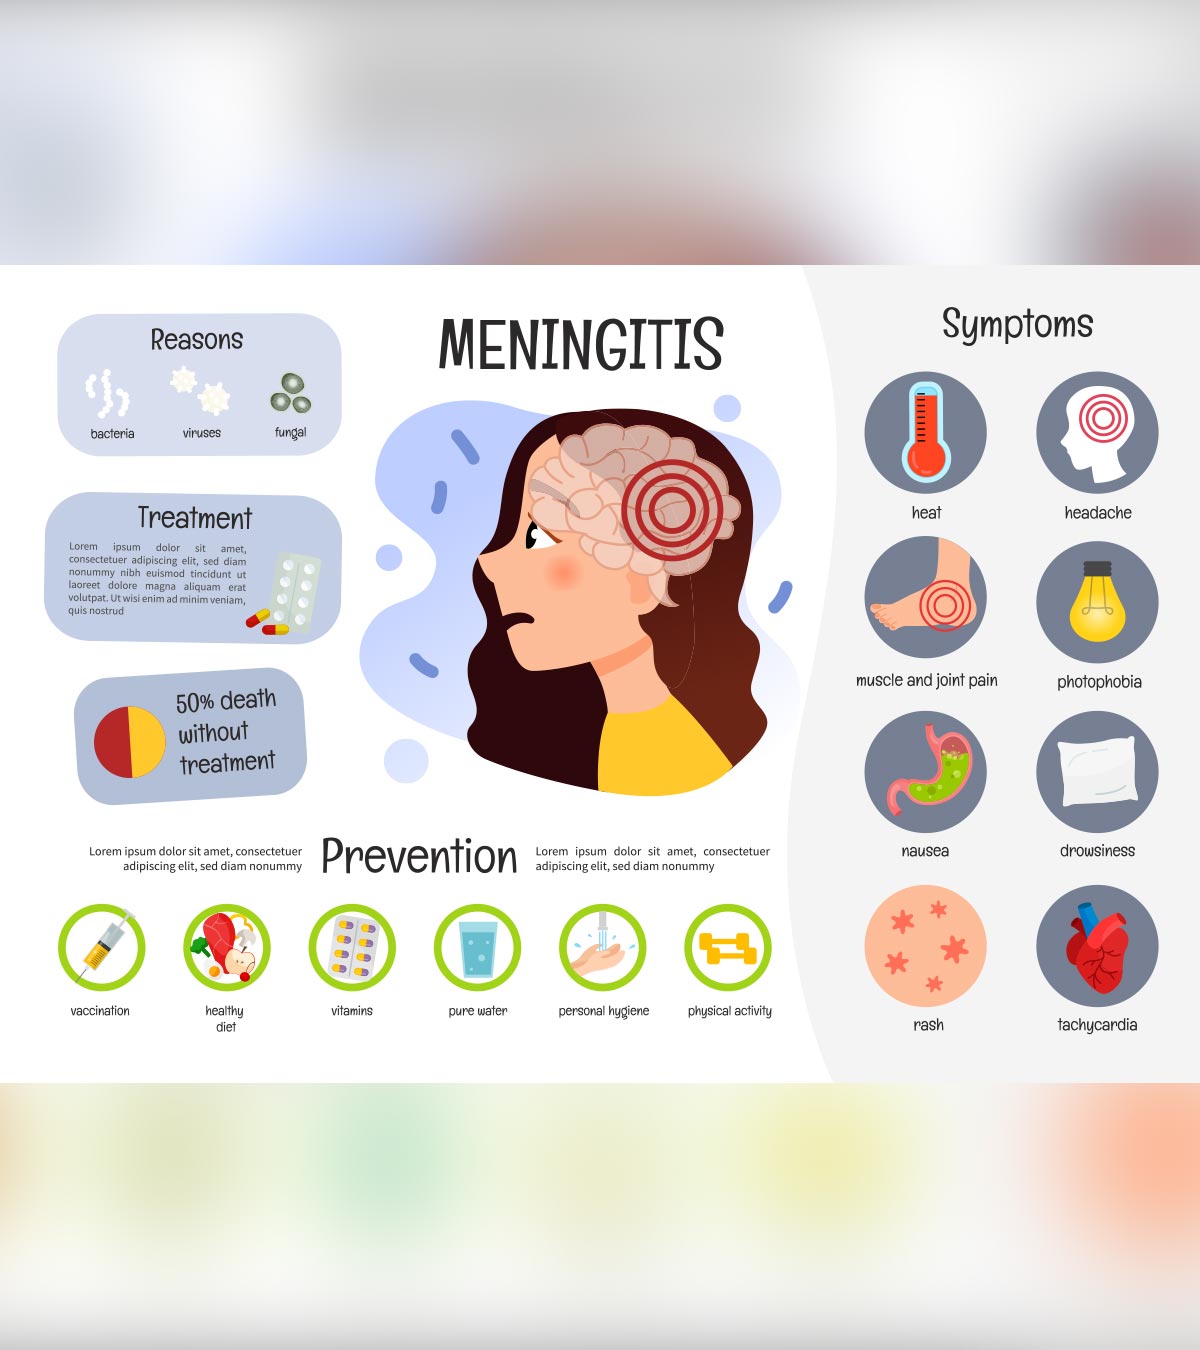 Meningitis In Children: Symptoms, Causes And Treatment